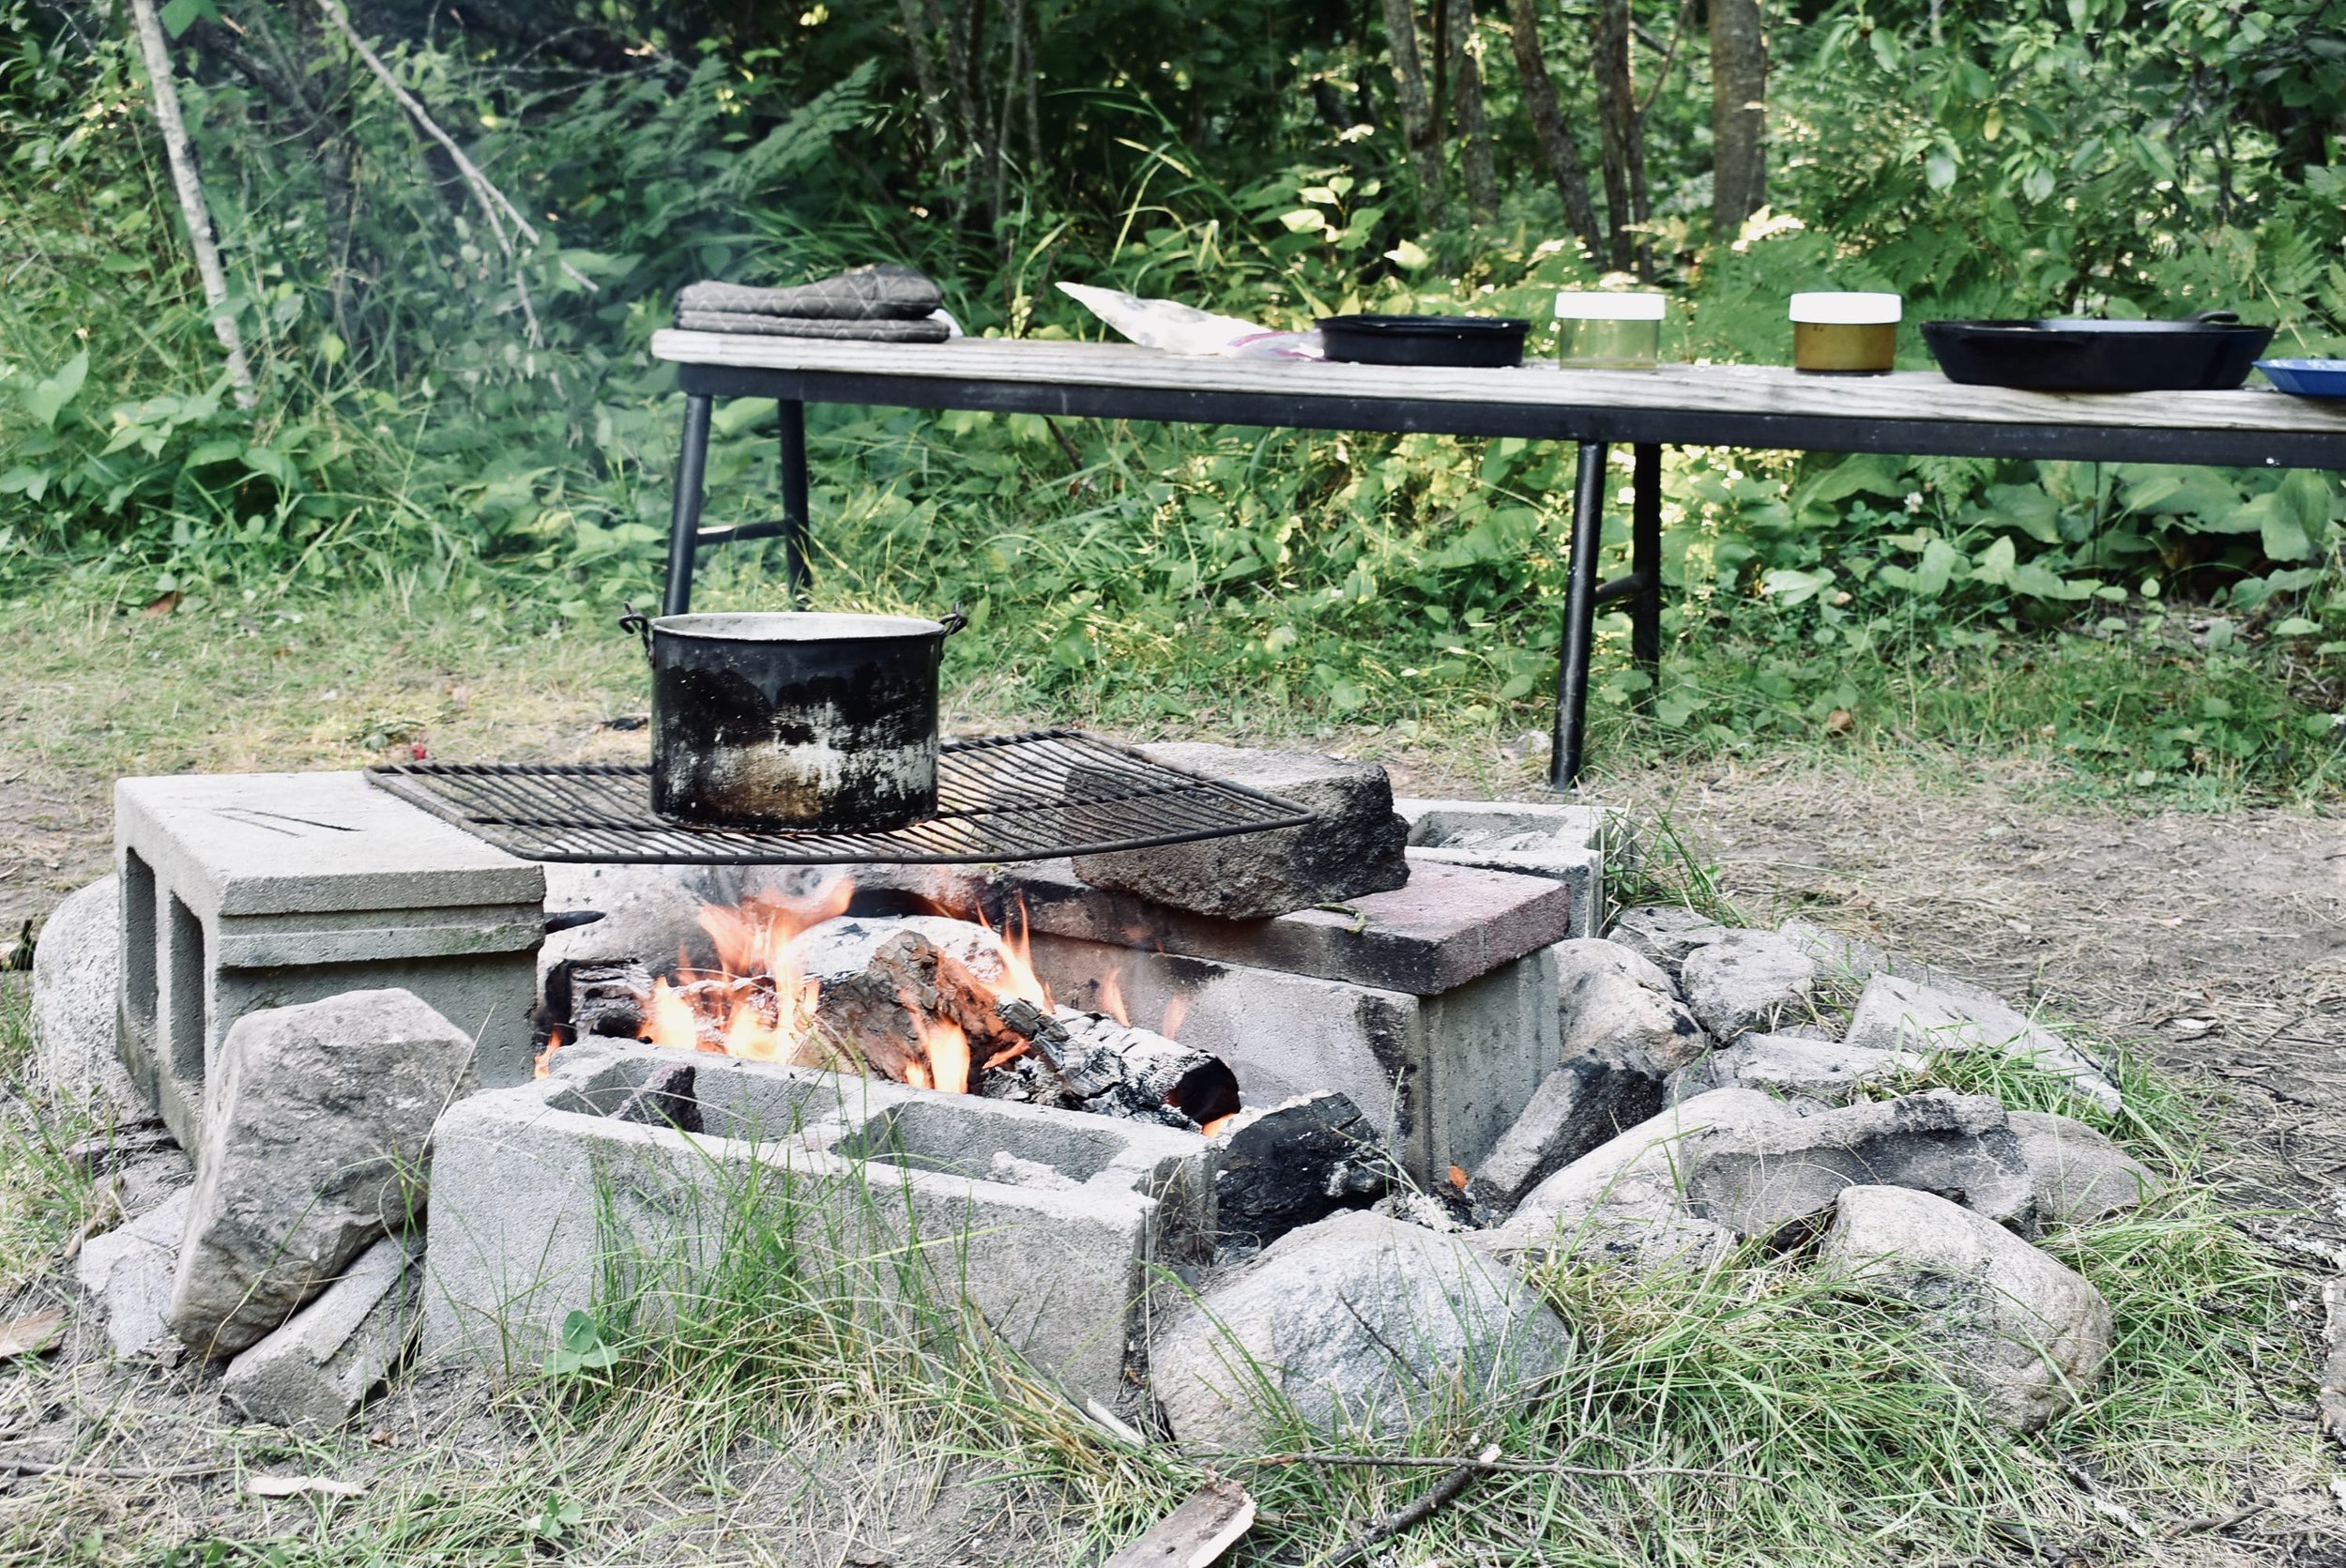 WILDERNESS_campfire-dinner-set-up-EDITED.jpeg